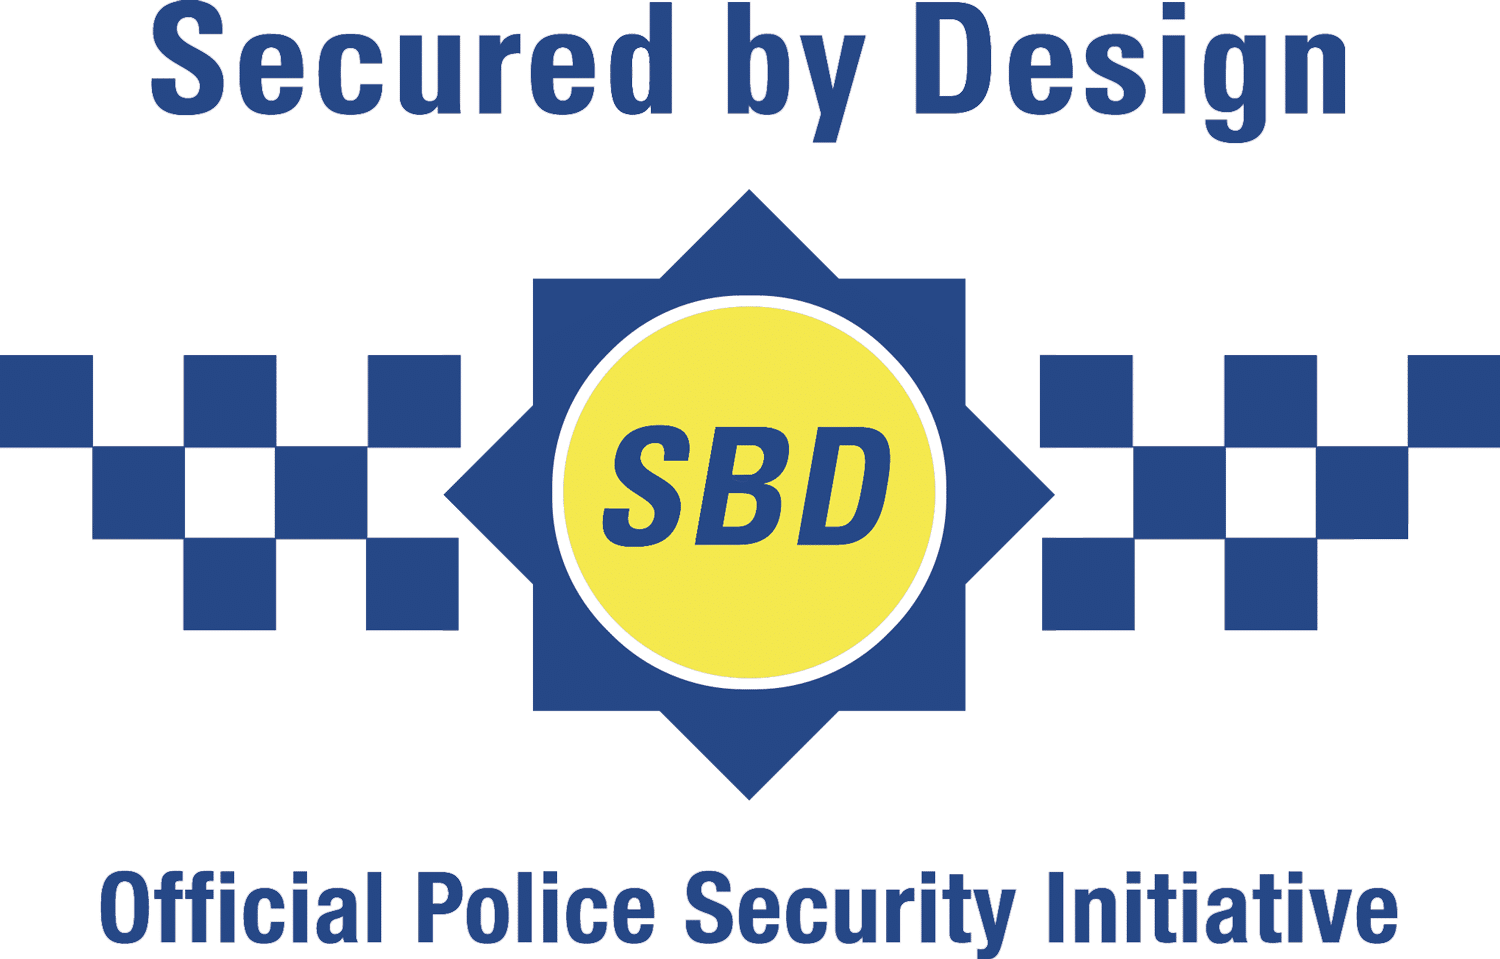 Secured by design award logo